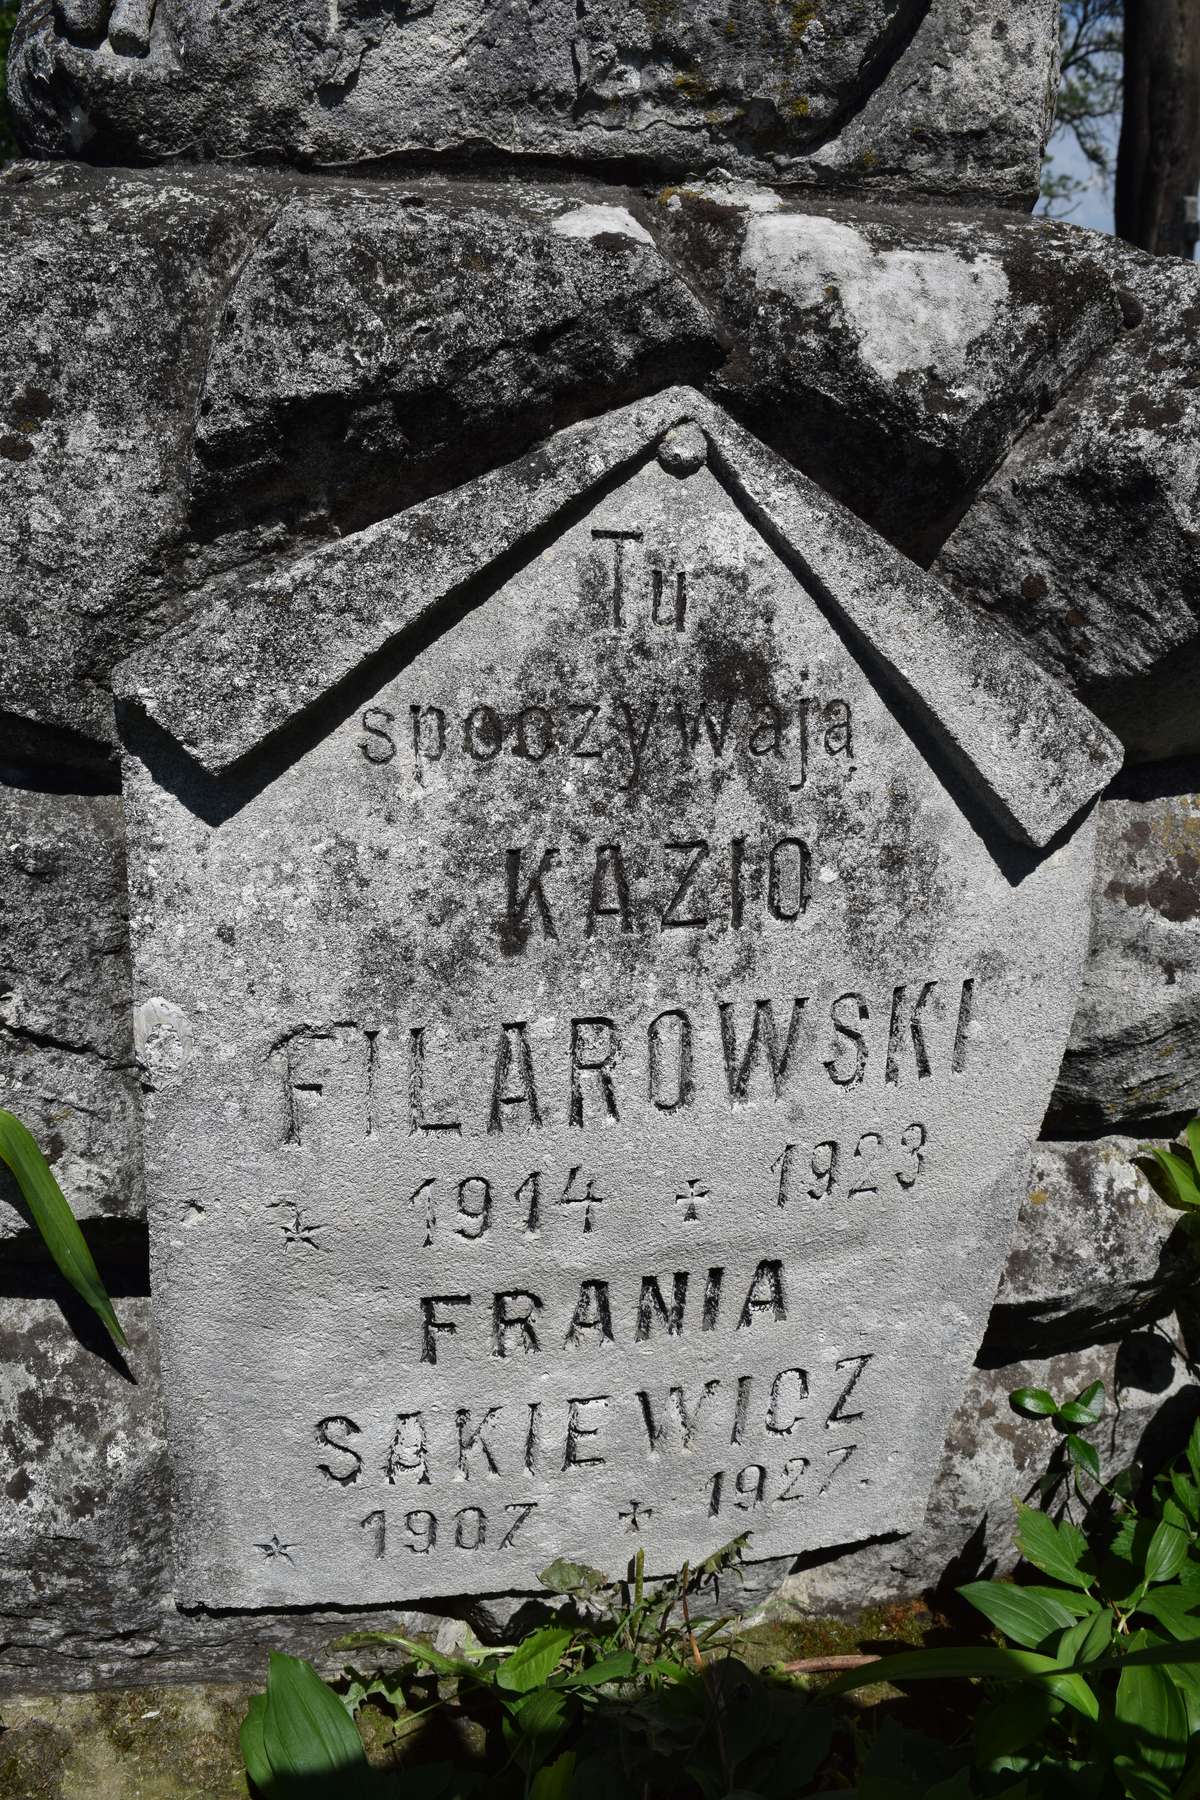 Fragment nagrobka Kazimierza Filarowskiego i Franciszki Sakiewicz, cmentarz w Zbarażu, stan z 2018